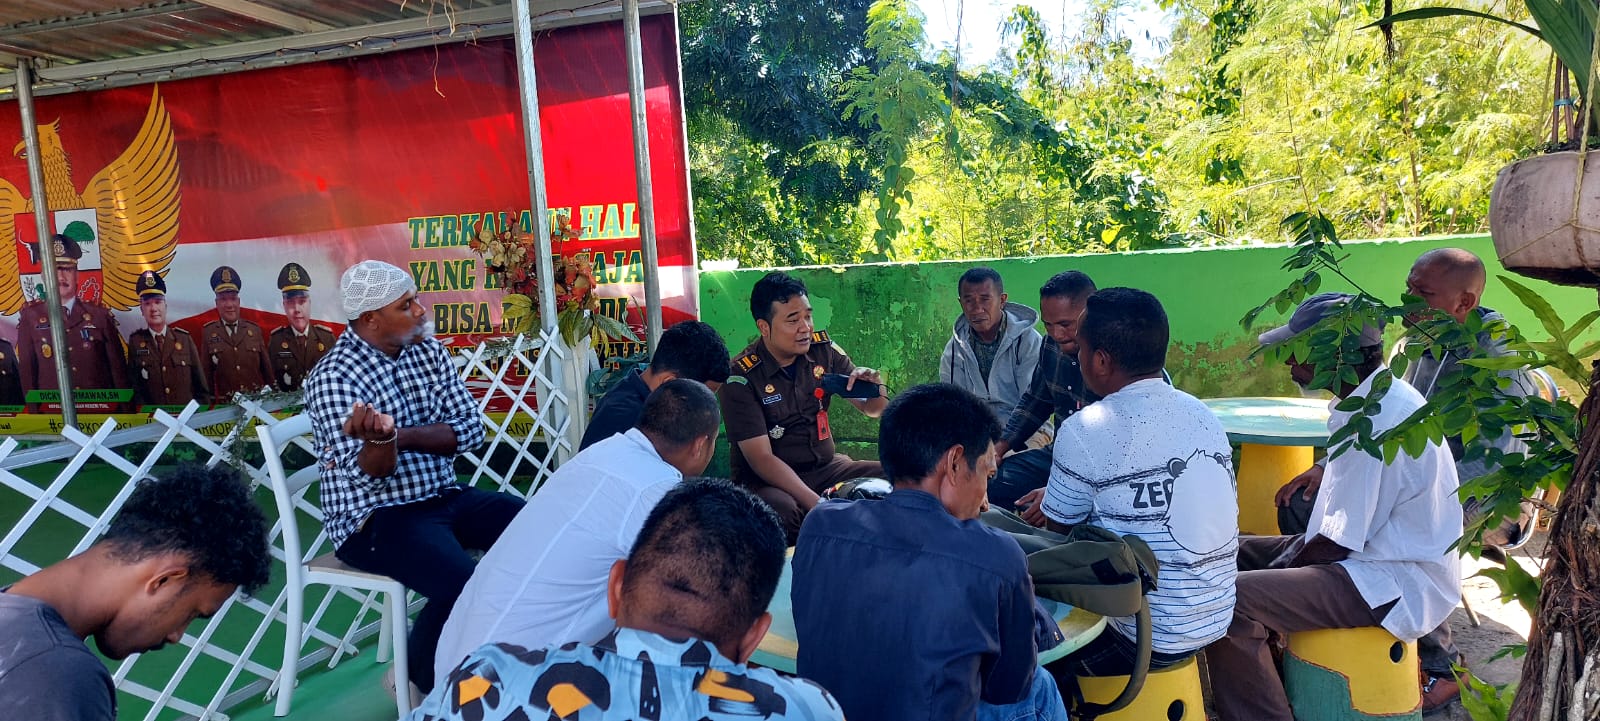 Pemuda Dusun Fair Tual Soroti Kinerja Jaksa, Kabag Hukum Bakal Diperiksa